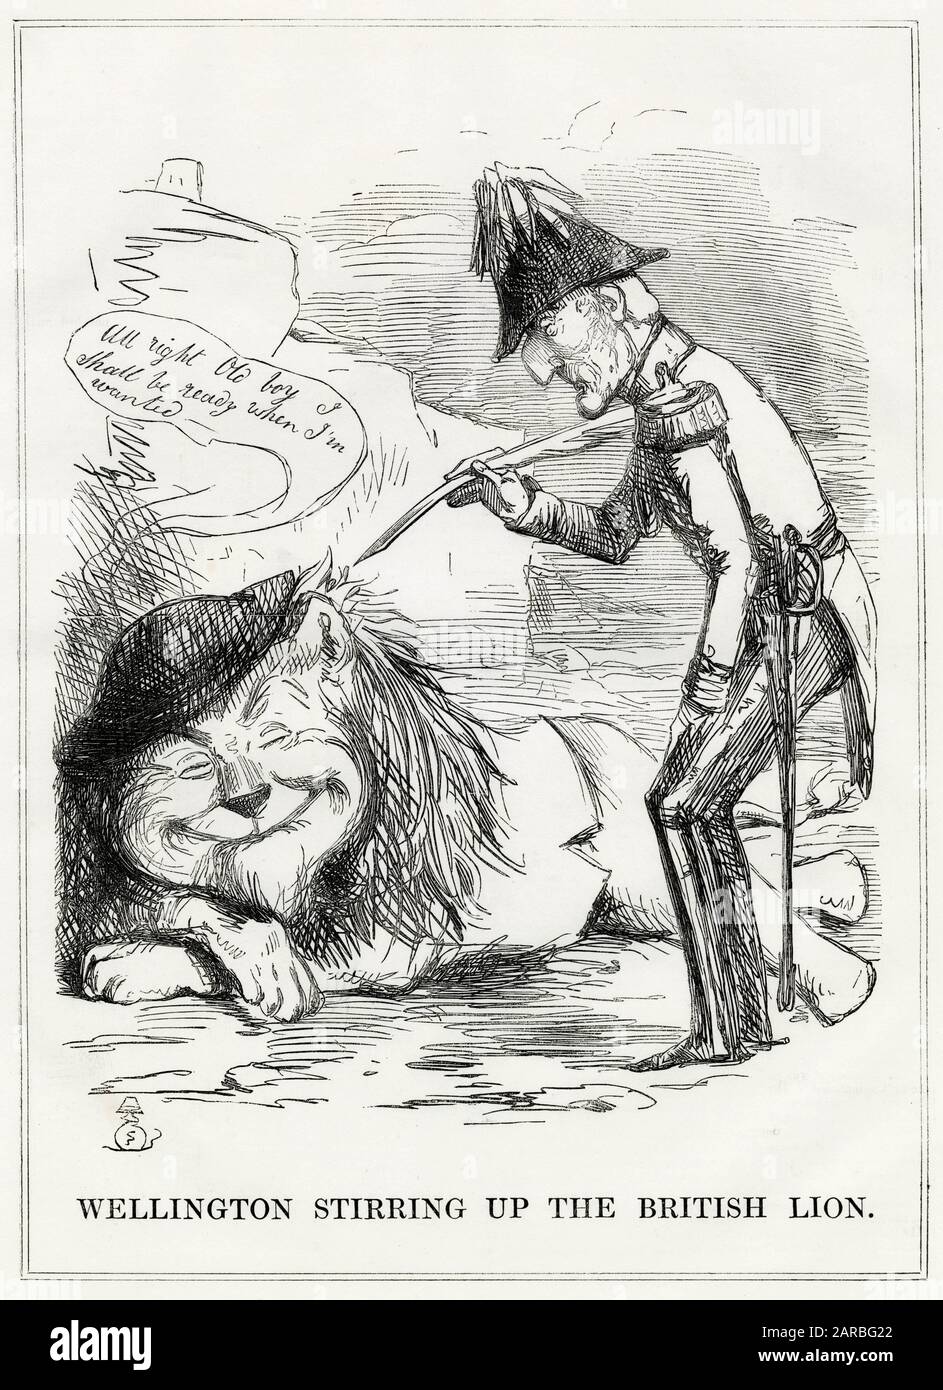 Cartoon, Wellington, der den britischen Löwen aufrührt -- mit der Drohung einer französischen Invasion, döbelt der Löwe unbesorgt, sagt dem Herzog, dass er bereit sein wird, wenn er gesucht wird. Stockfoto